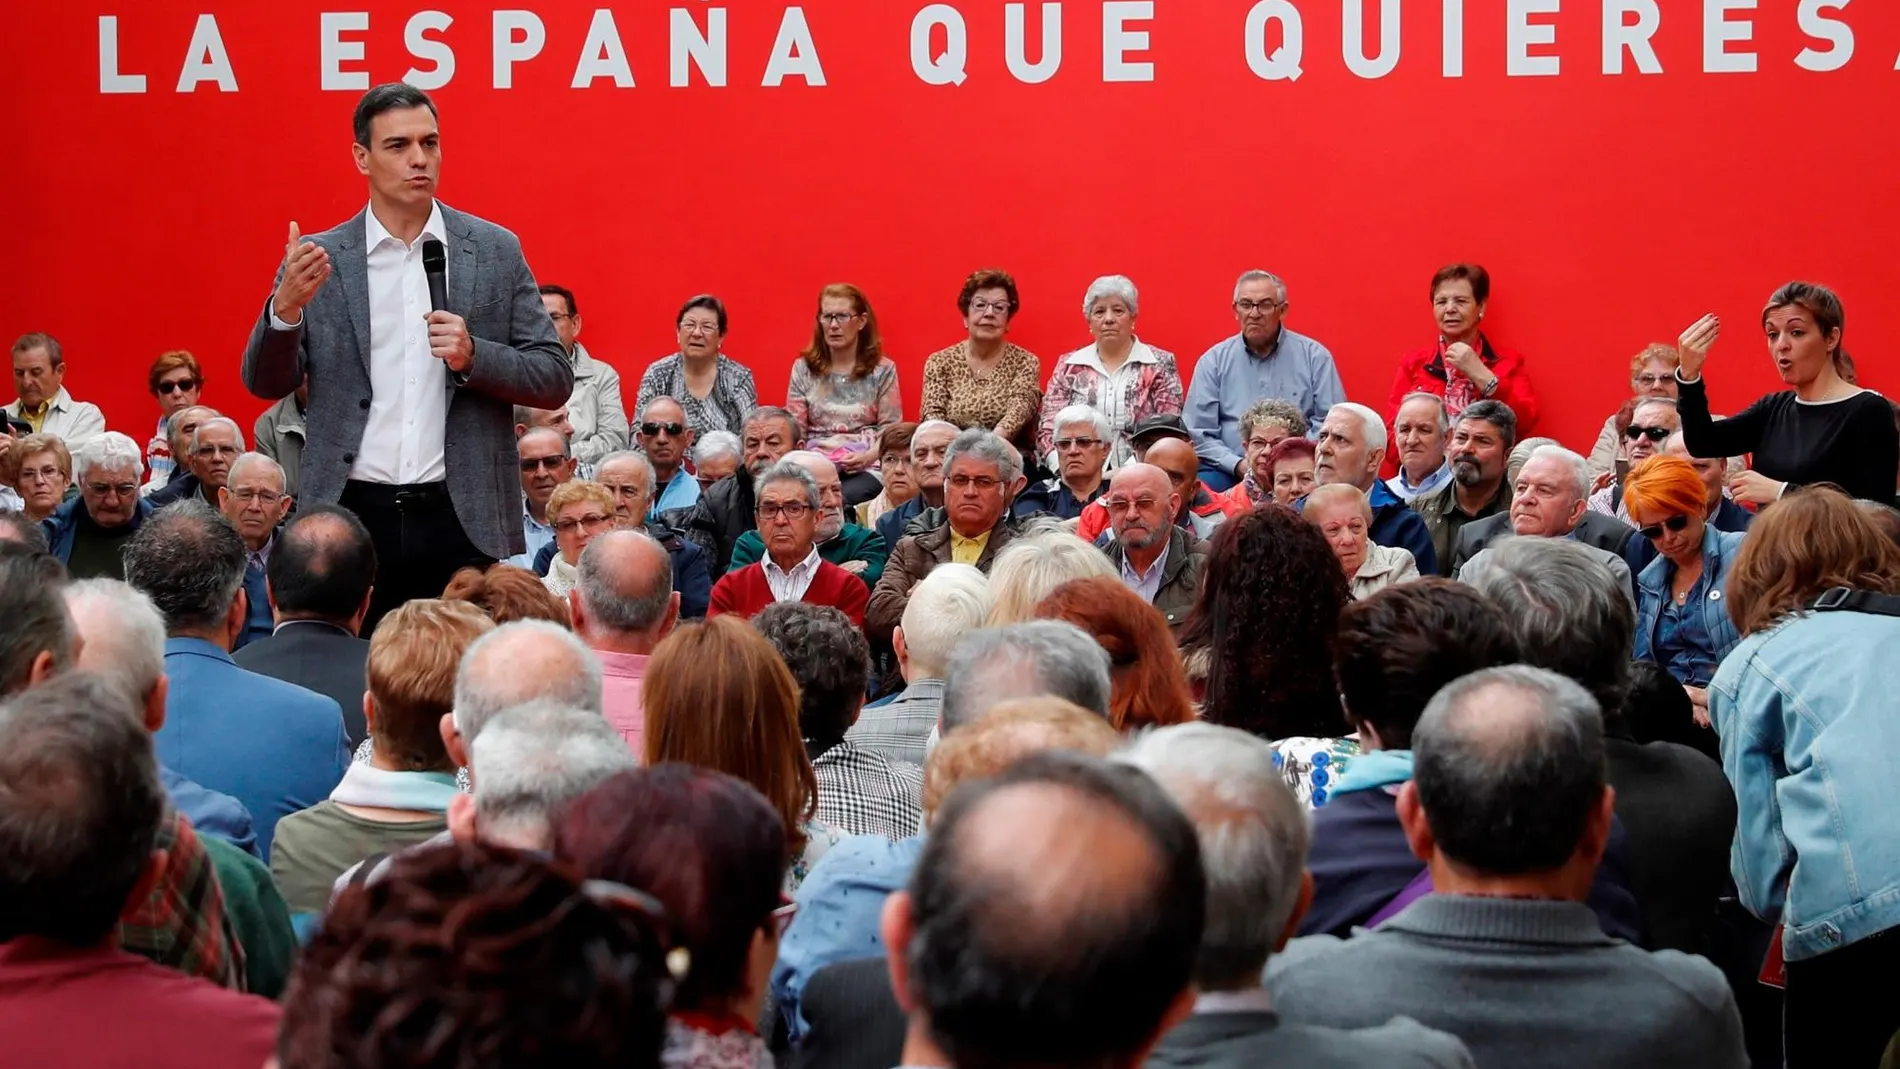 El presidente del Gobierno y candidato del PSOE, Pedro Sánchez, pronuncia su discurso durante un acto de campaña electoral este lunes en Madrid